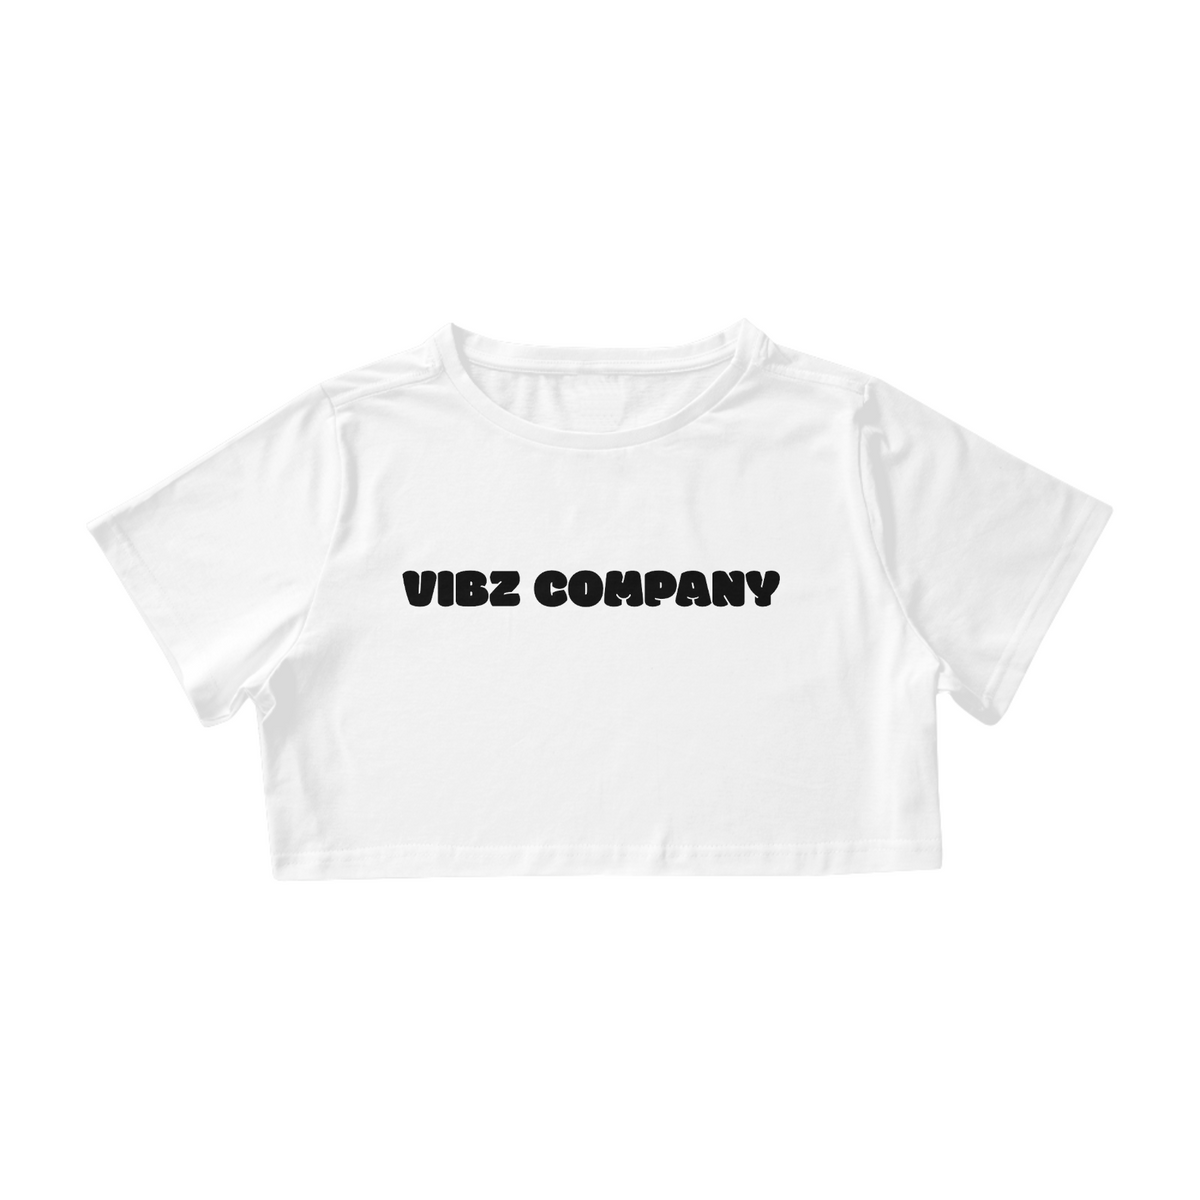 Nome do produto: CROPPED VIBZ COMPANY